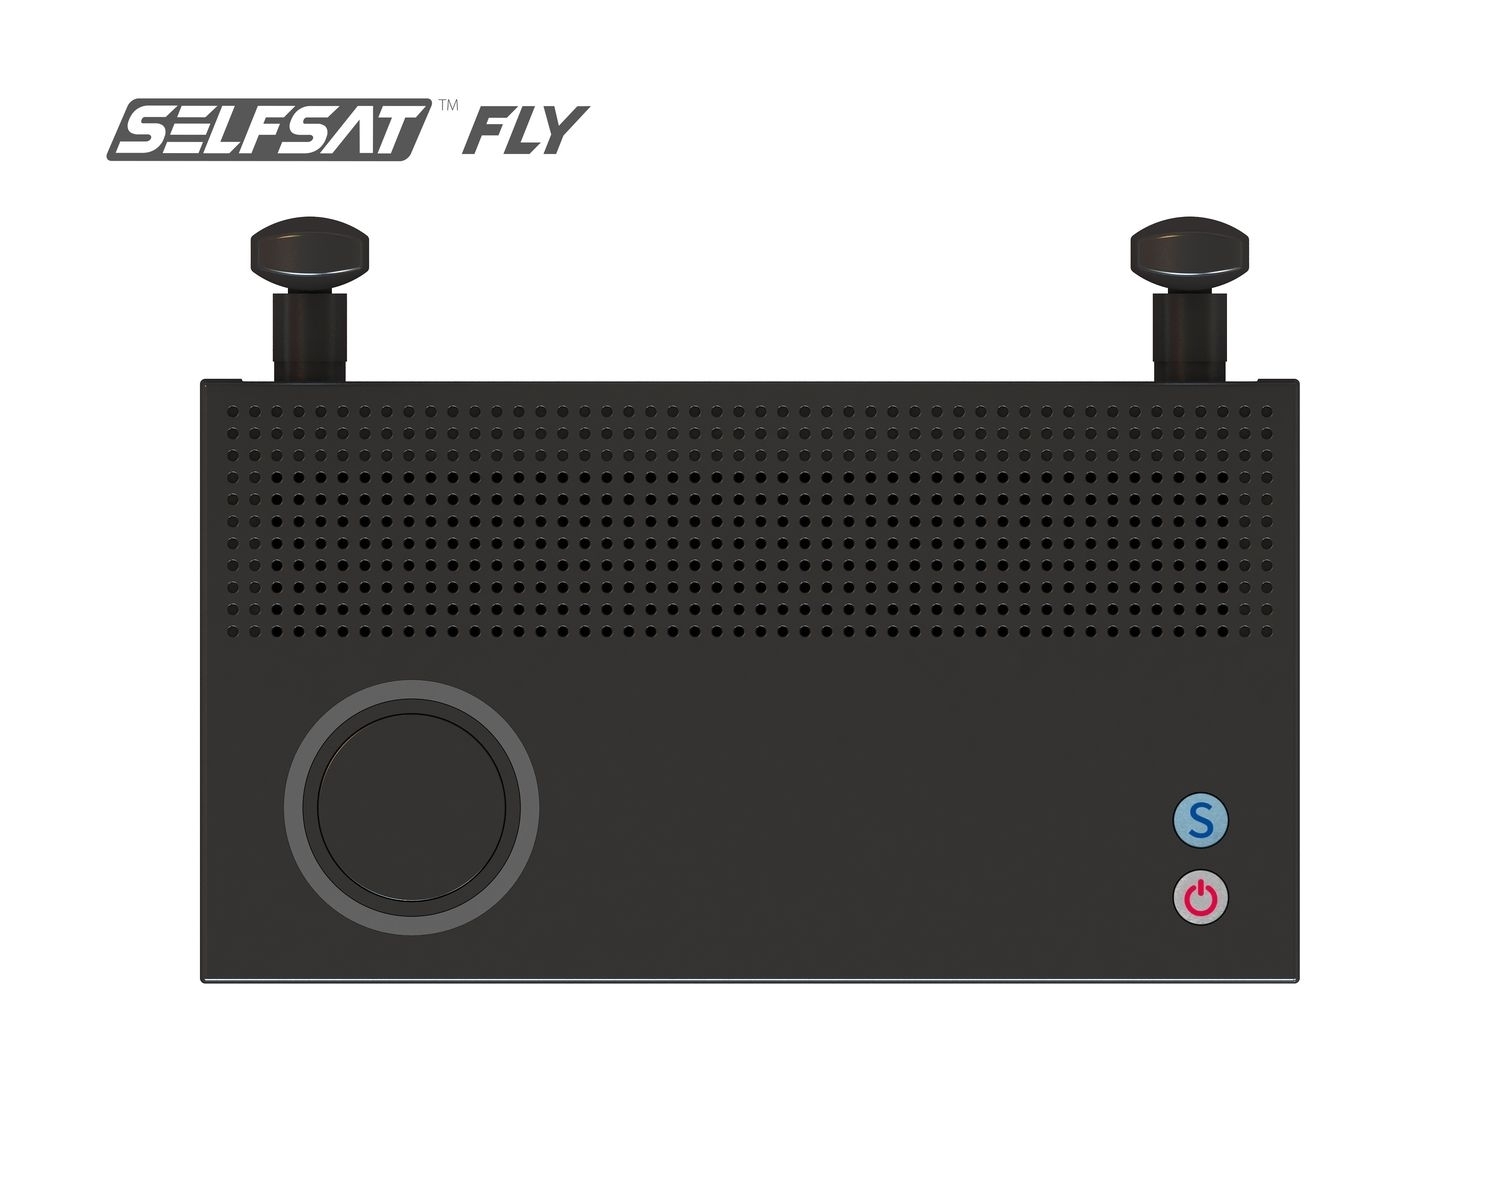 Selfsat Fly-200 Drahtloses Audio Video Übertragungssystem (Full HD, HDMI, USB, für 8 Teilnehmer)